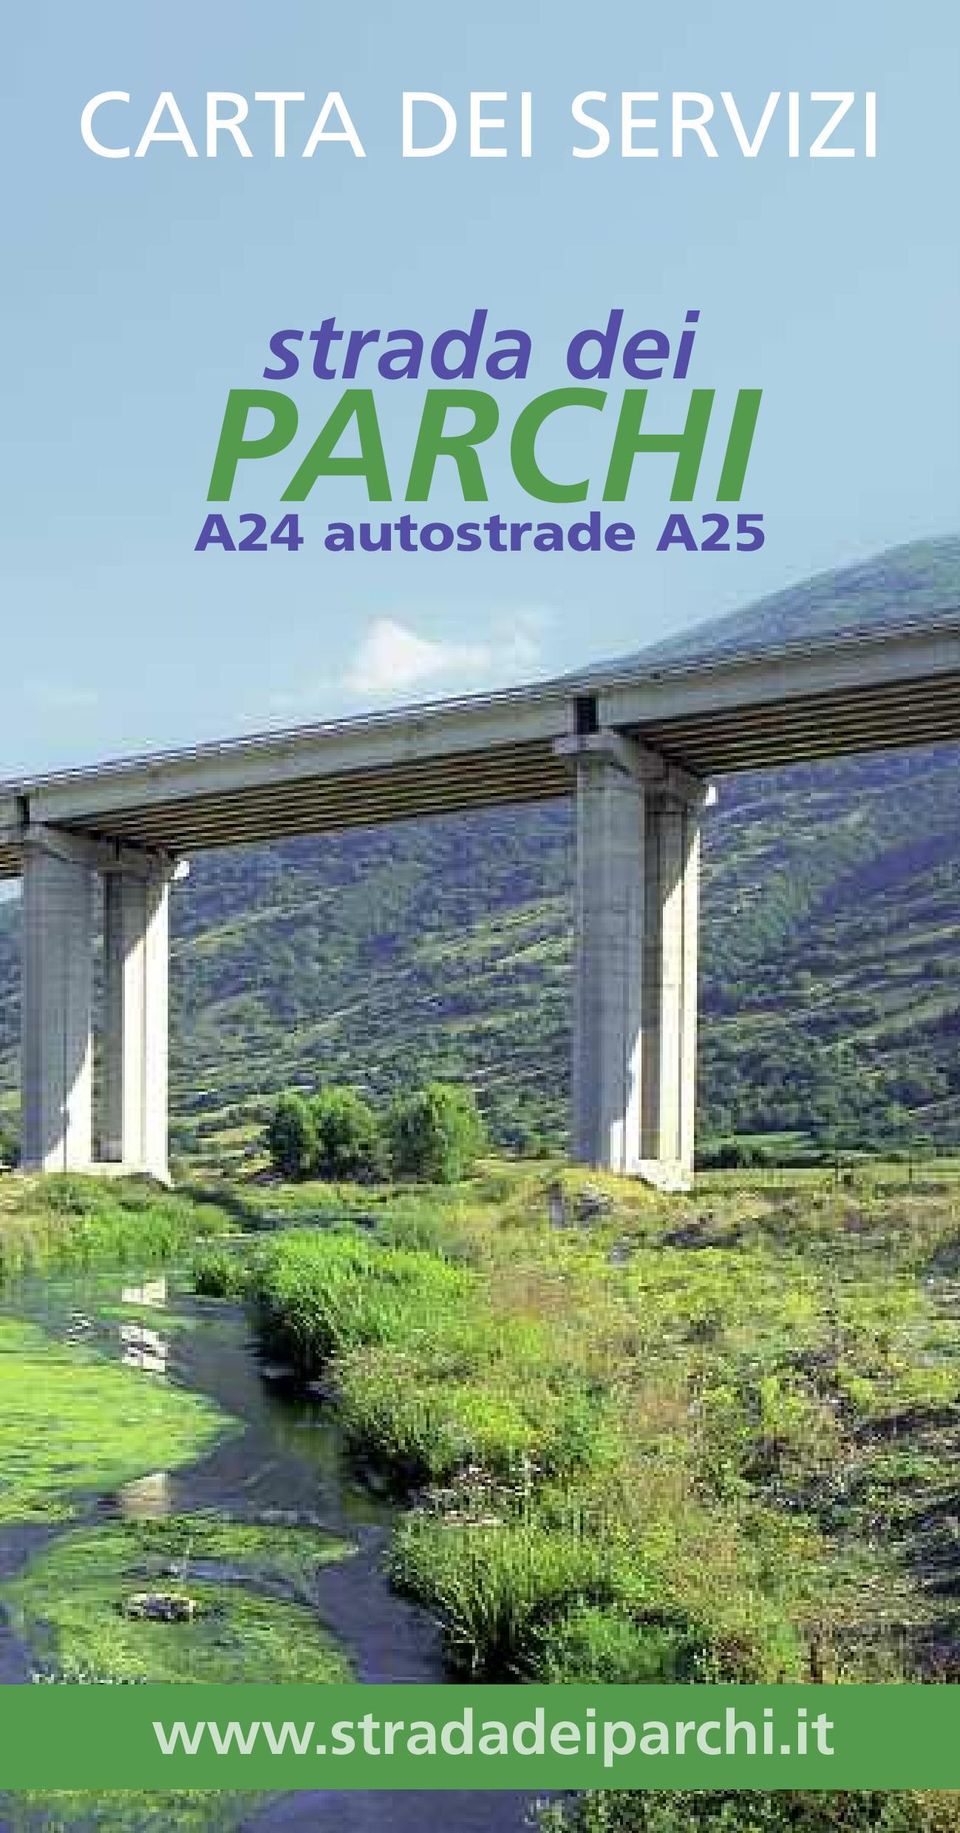 A24 autostrade A25